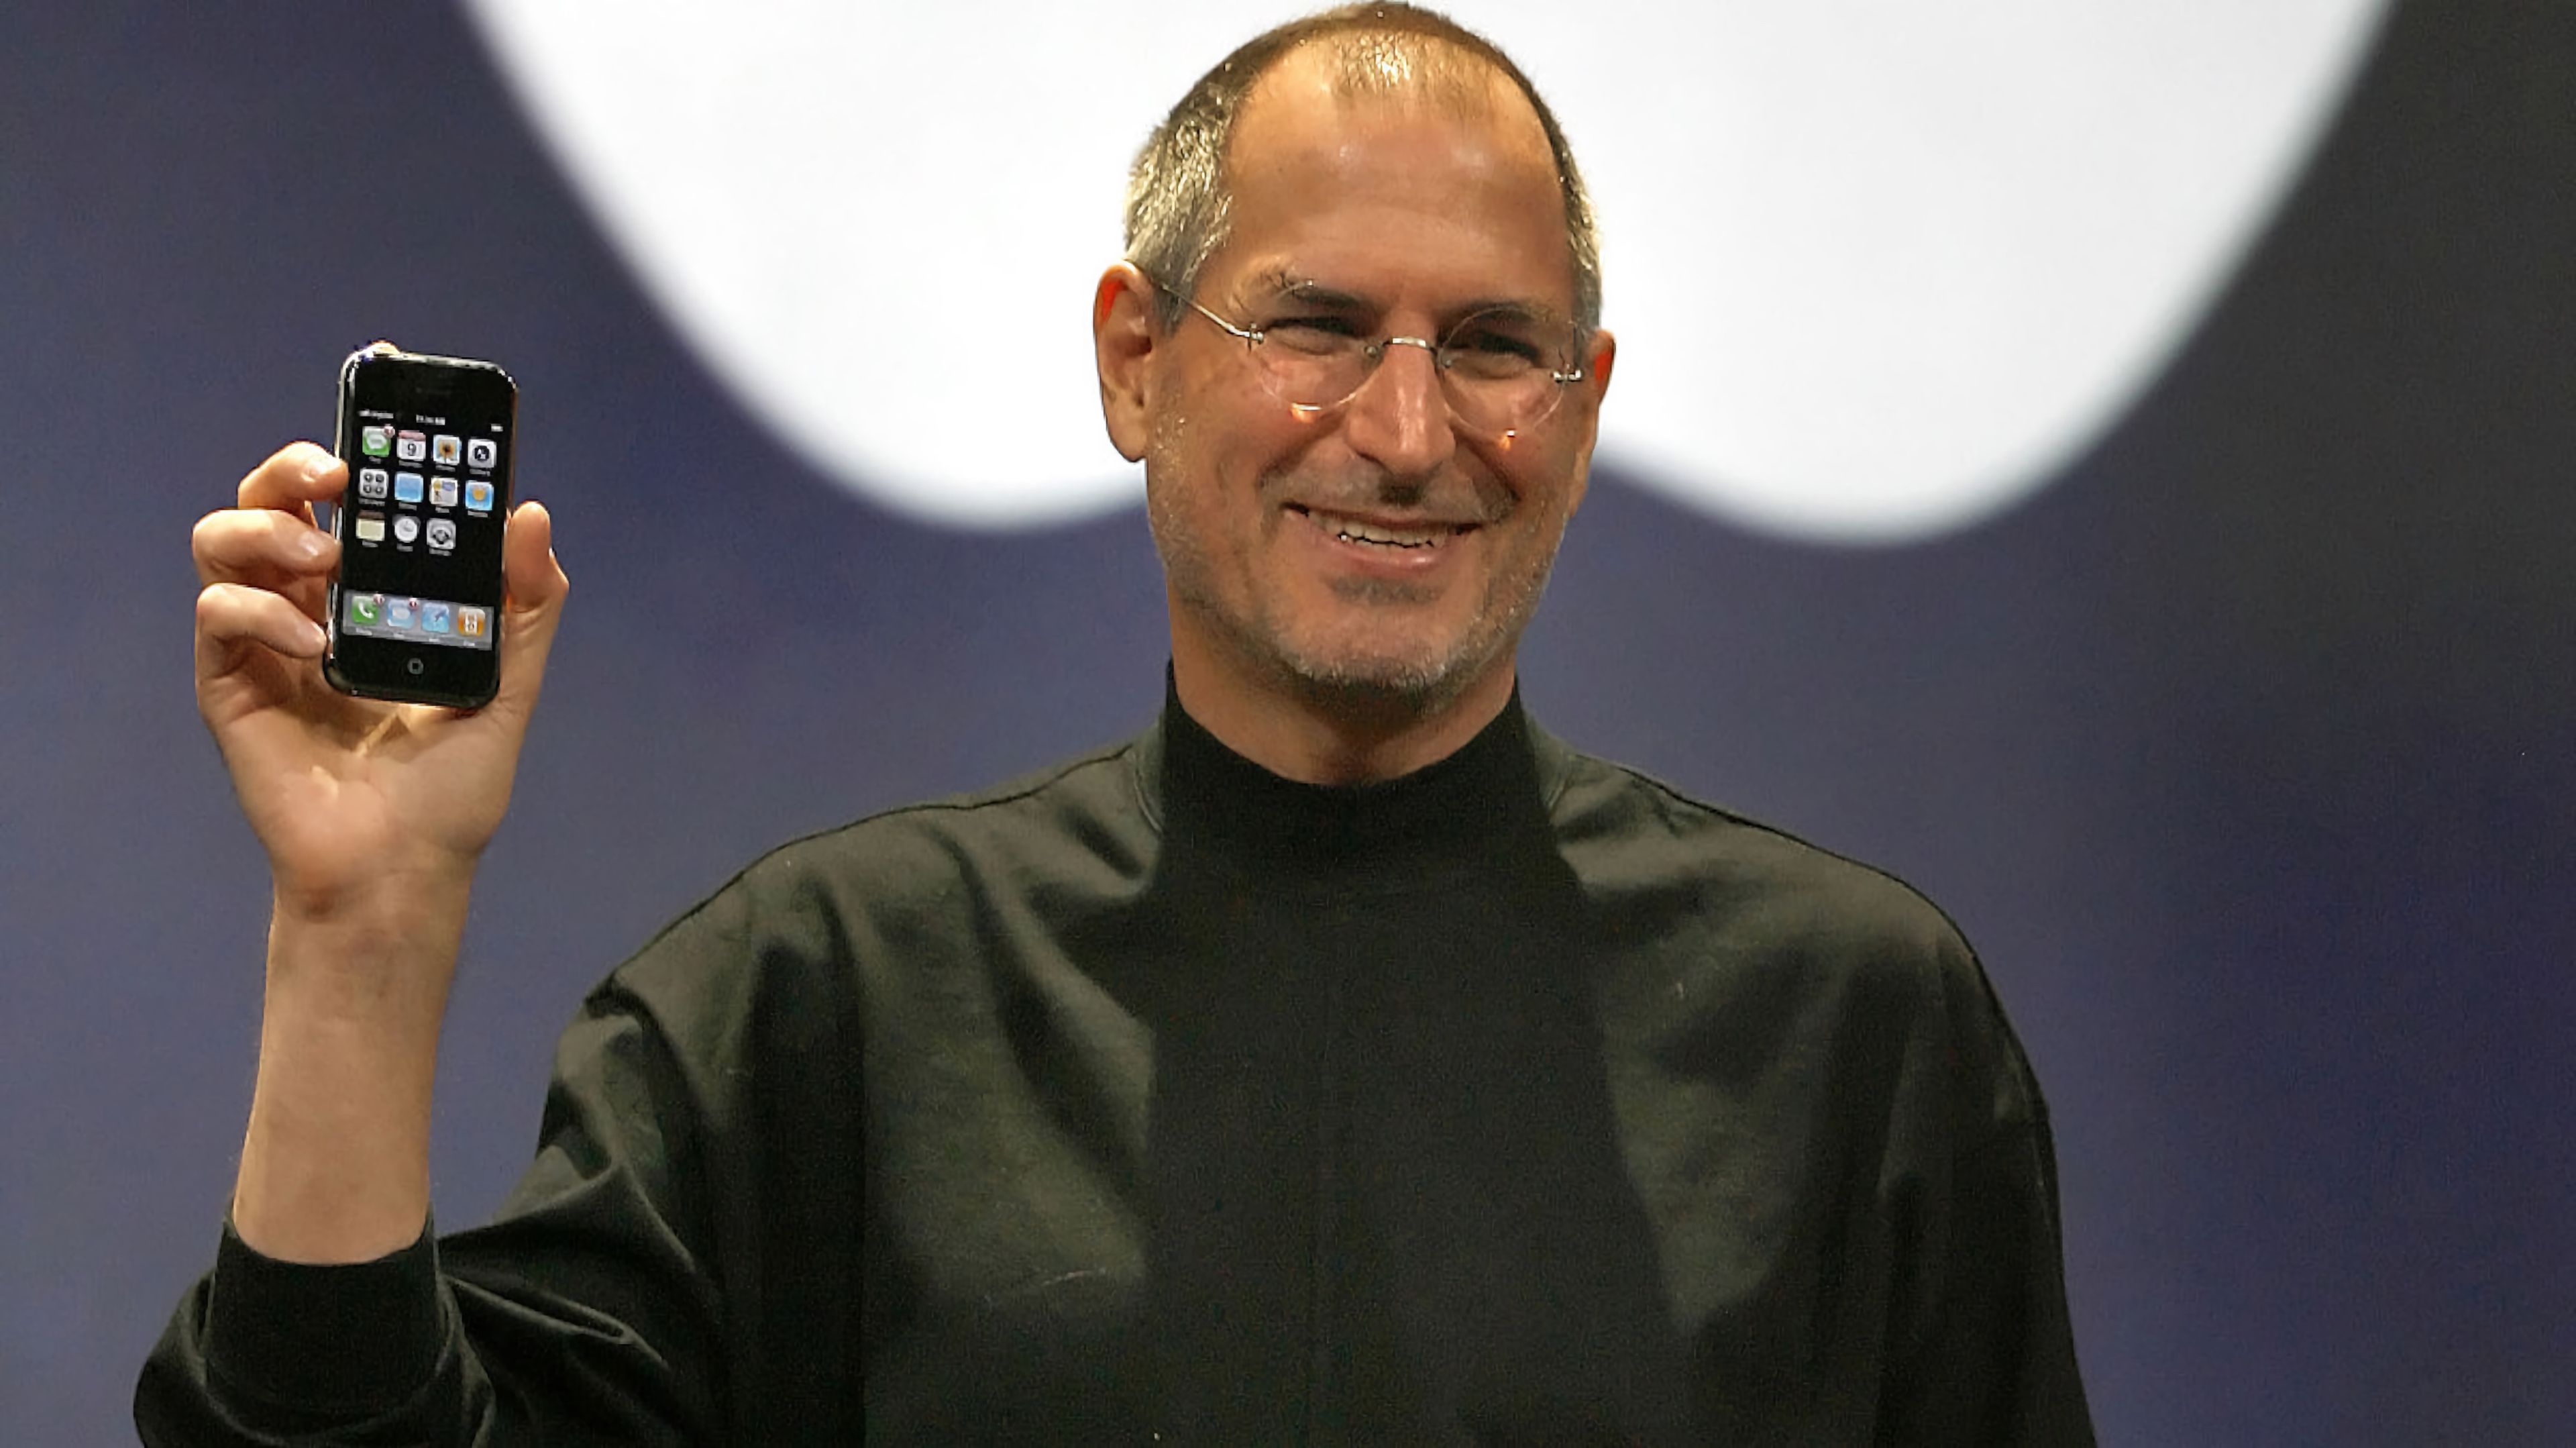 Steve Jobs posa con el primer iPhone en su mano